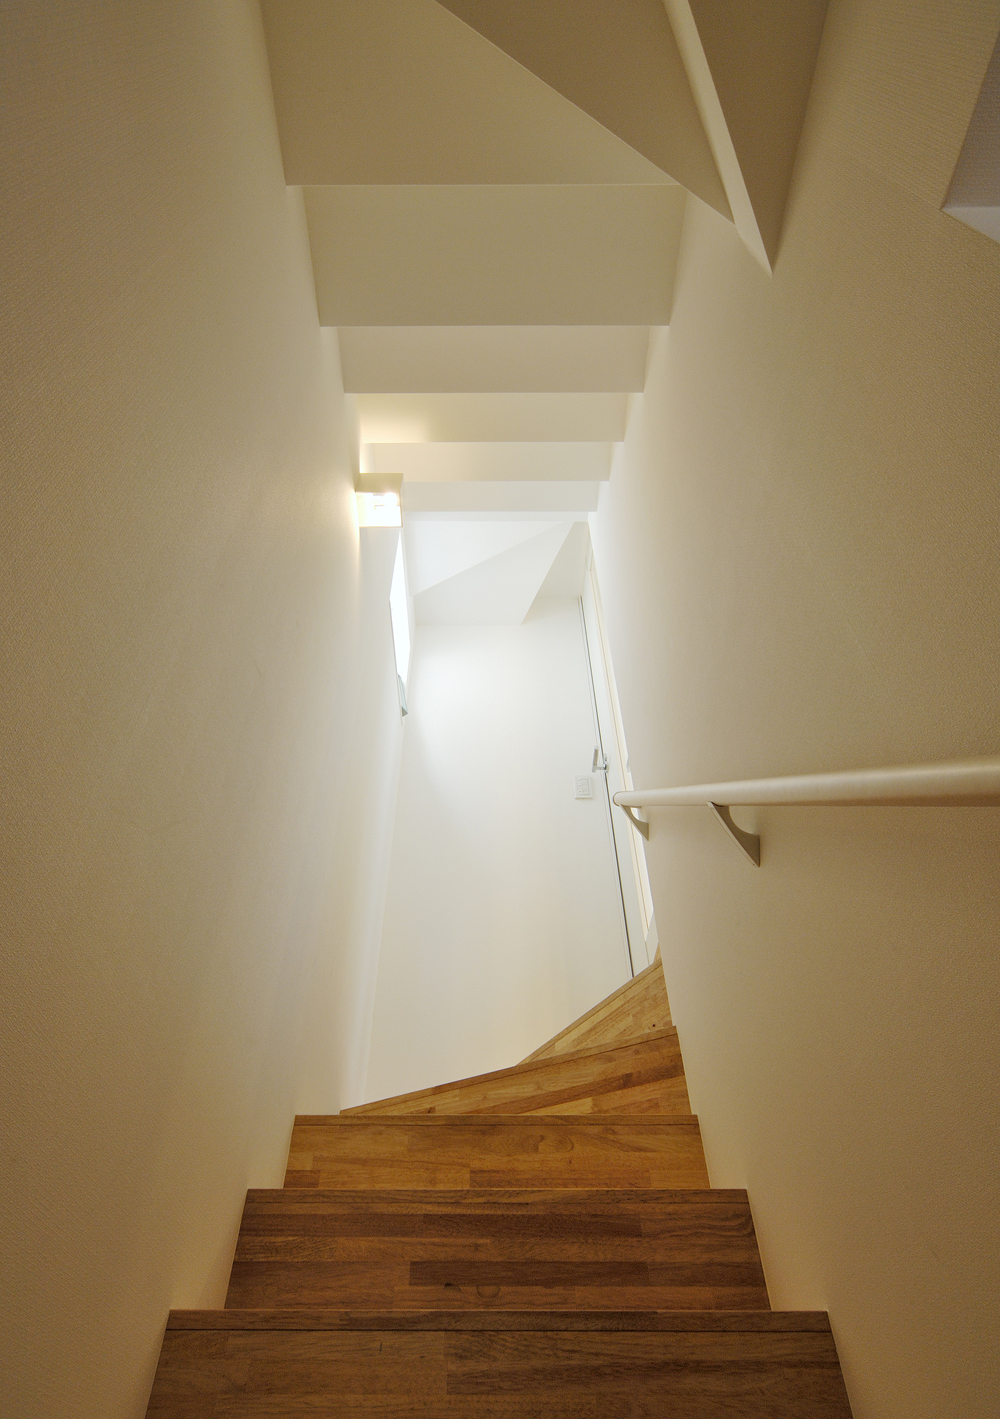 天井も木階段と同じ形状になっている動きのある階段空間